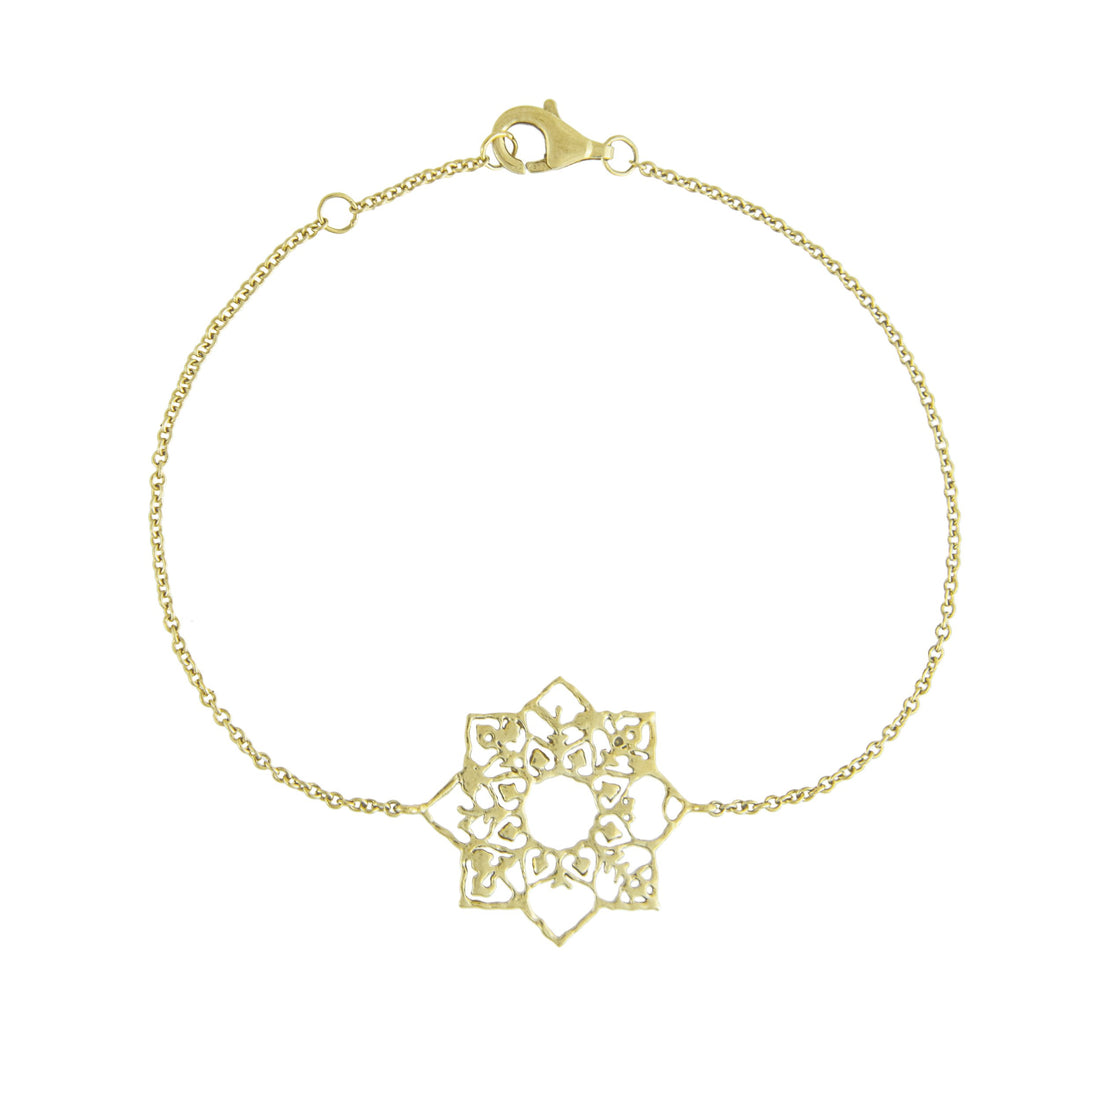 Full Bloom Bracelet by Natalie Perry